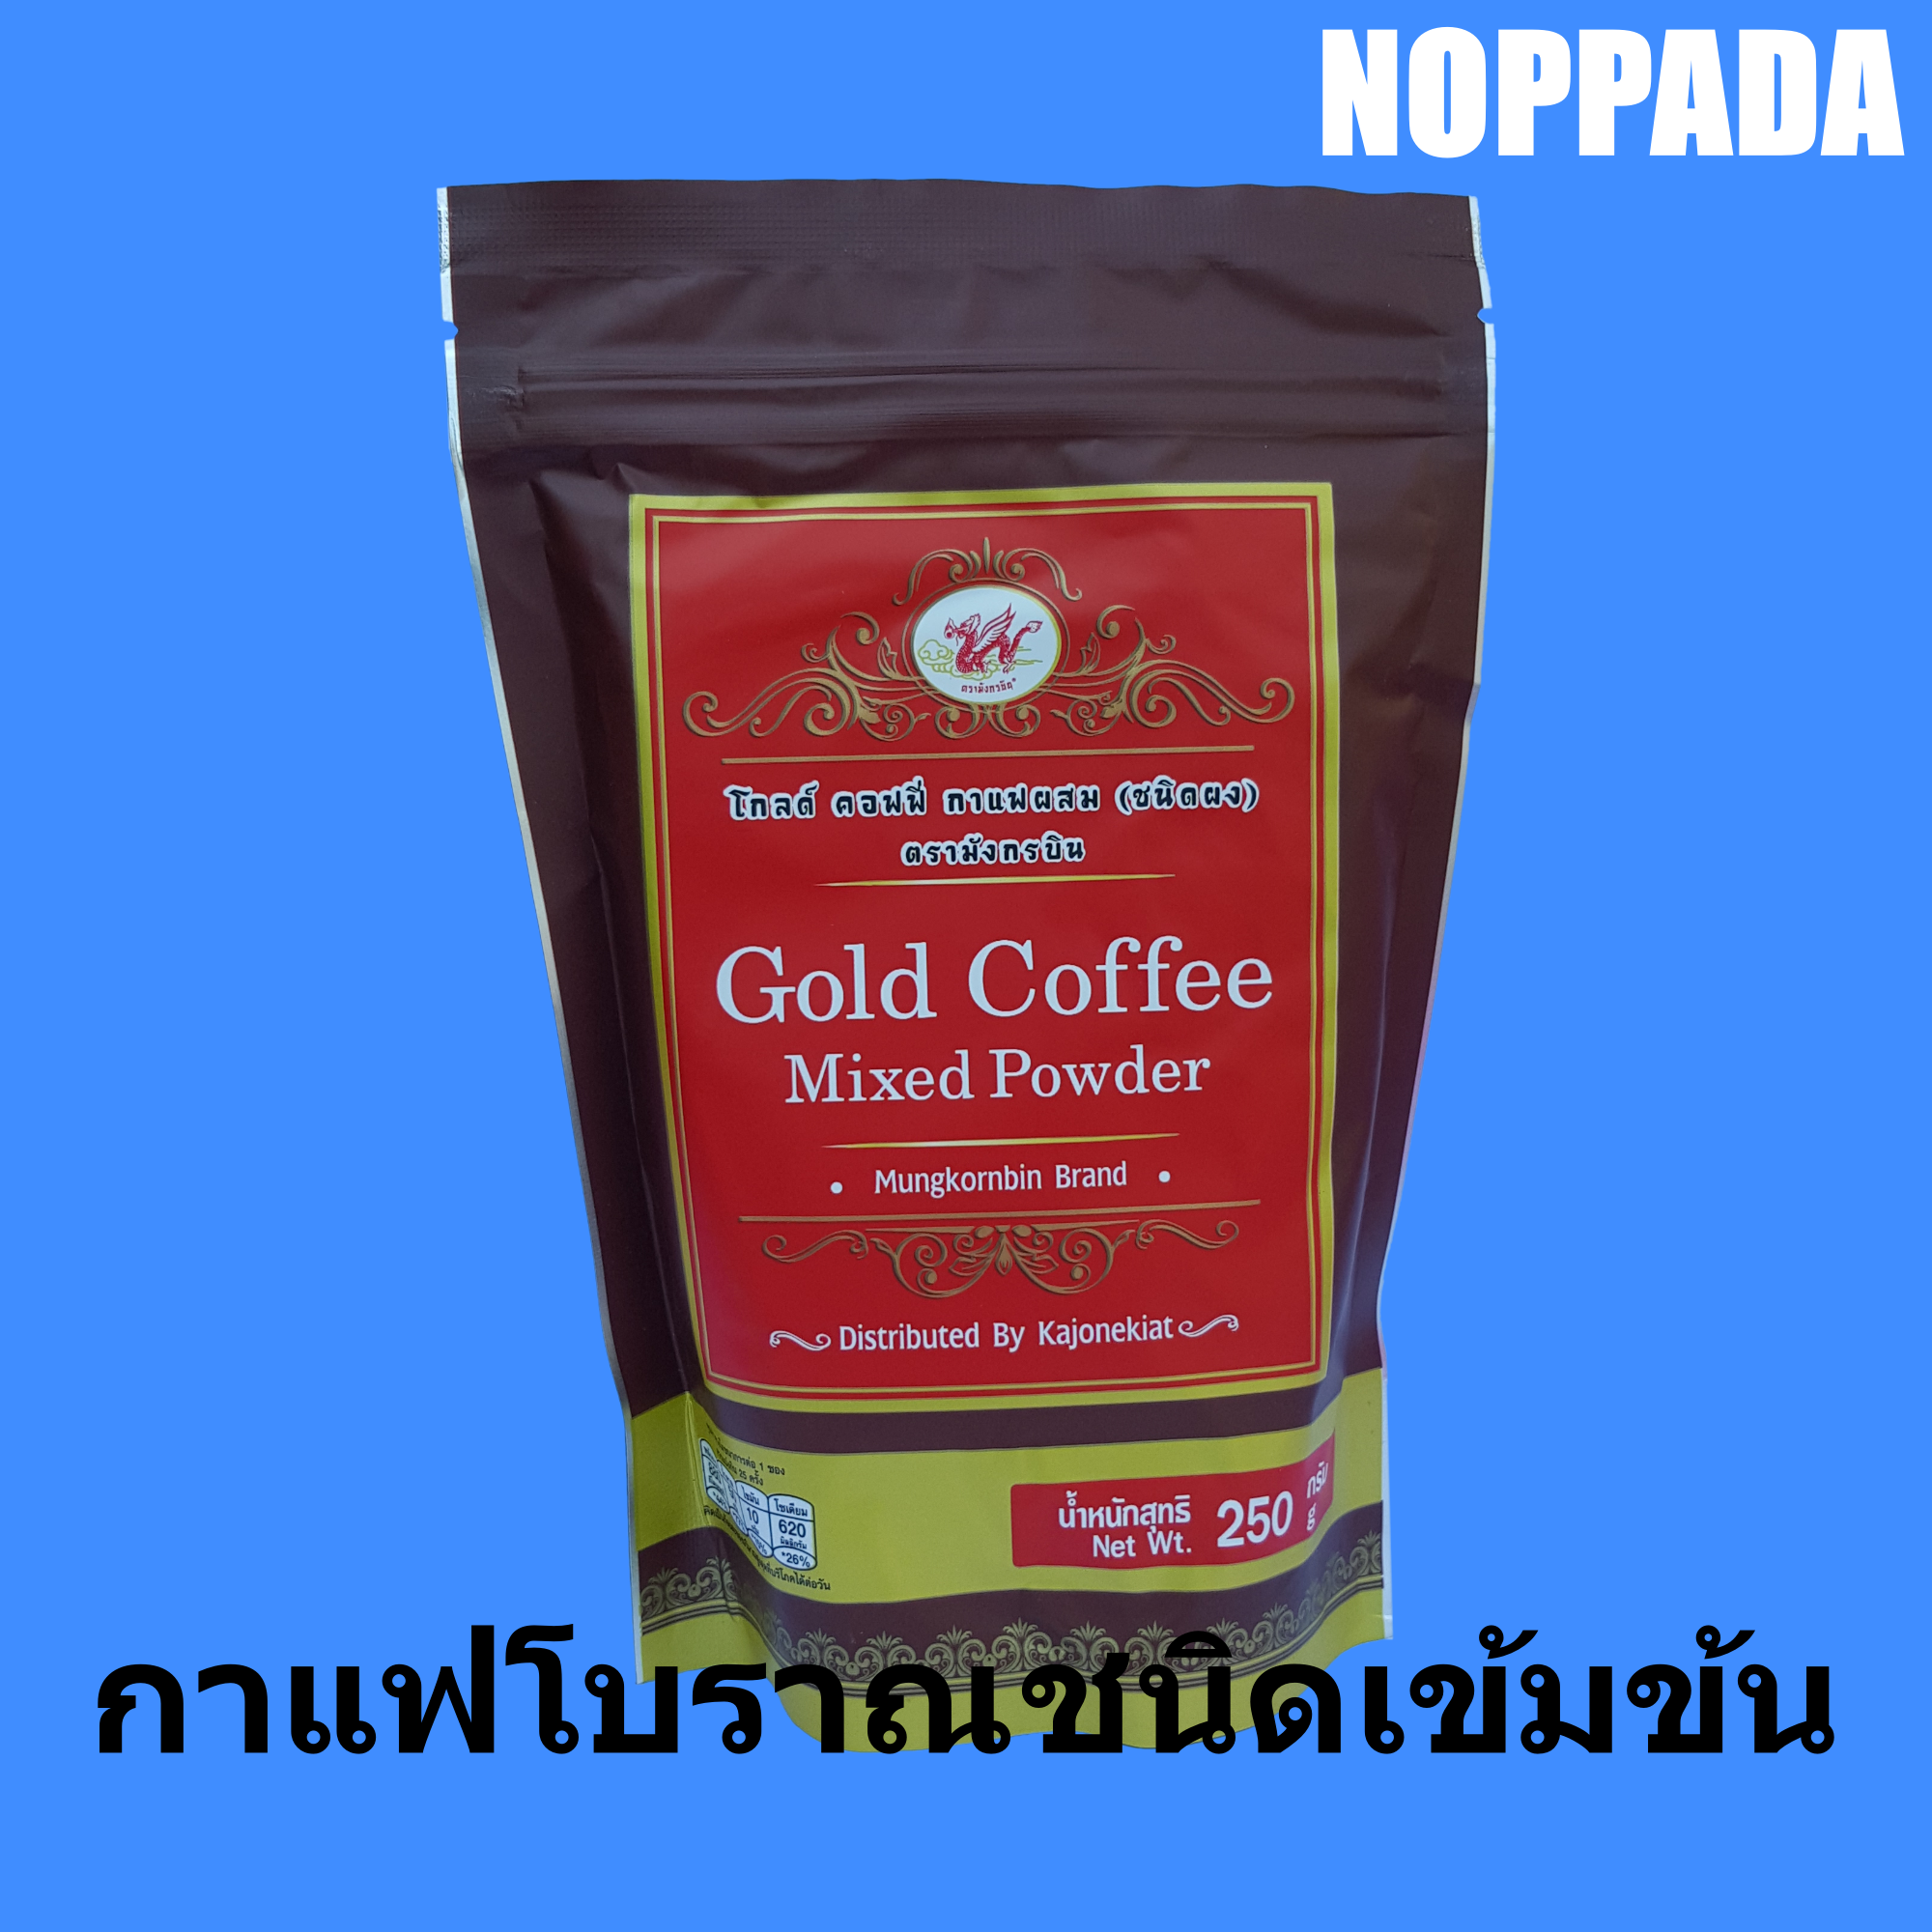 ผงกาแฟโบราณ โกลด์ คอฟฟี่ กาแฟผสม (ชนิดผง) ตรา มังกรบิน 250g Gold Coffee Mixed Powder หัวเชื้อกาแฟโบราณ ชนิดเข้มข้น  โอเลี้ยง  ผงโอเลี้ยง ผงกาแฟโบราณ  กาแฟมังกรบิน  กาแฟตรามังกรบิน กาแฟสด  กาแฟคั่วบด  ผงชงโอเลี้ยง กาแฟไทย กาแฟดำ โอยั้วะ โอยั้ว กาแฟเย็น